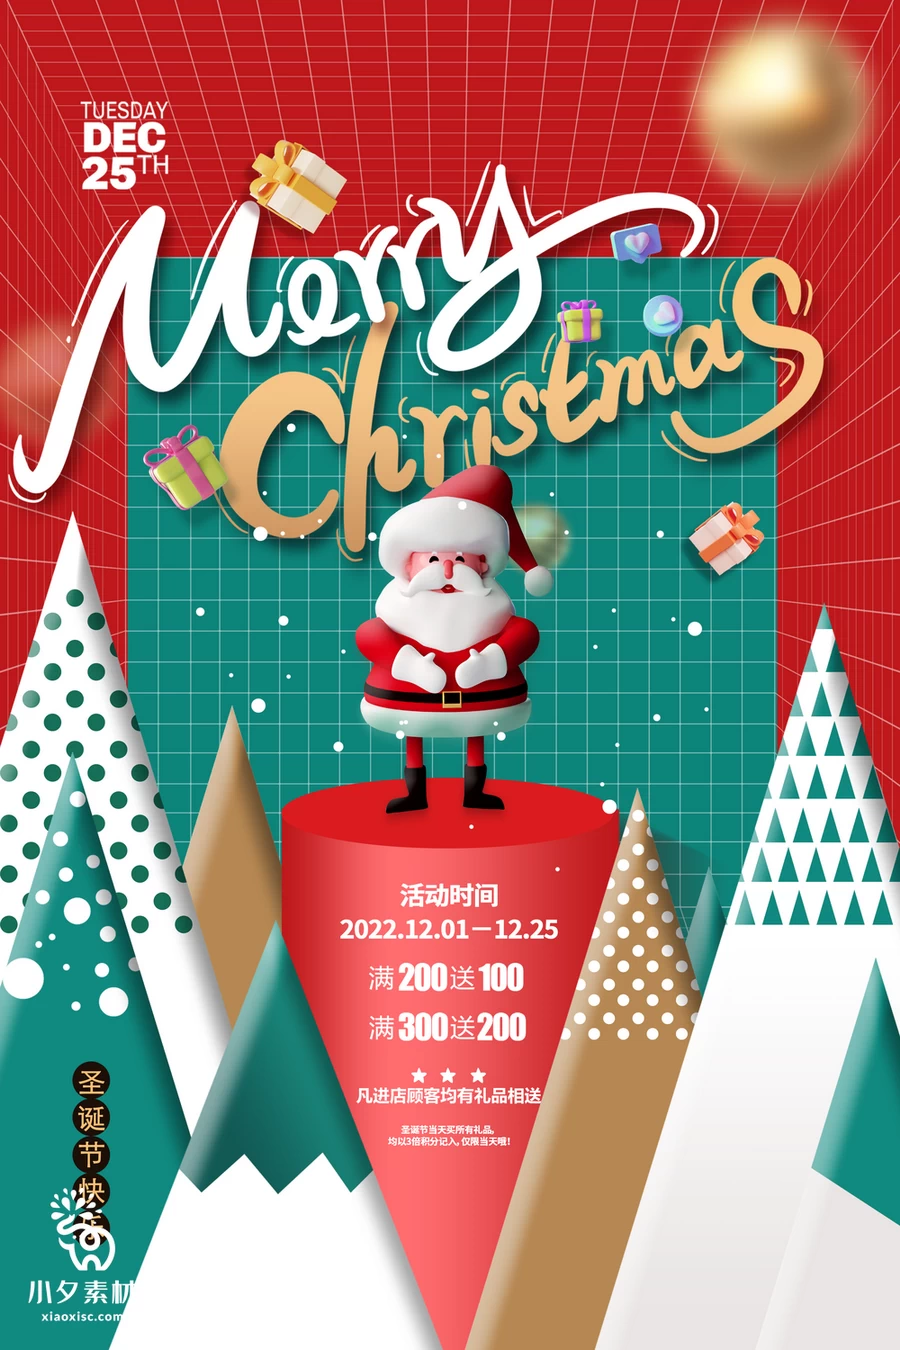 圣诞节节日节庆海报模板PSD分层设计素材【009】